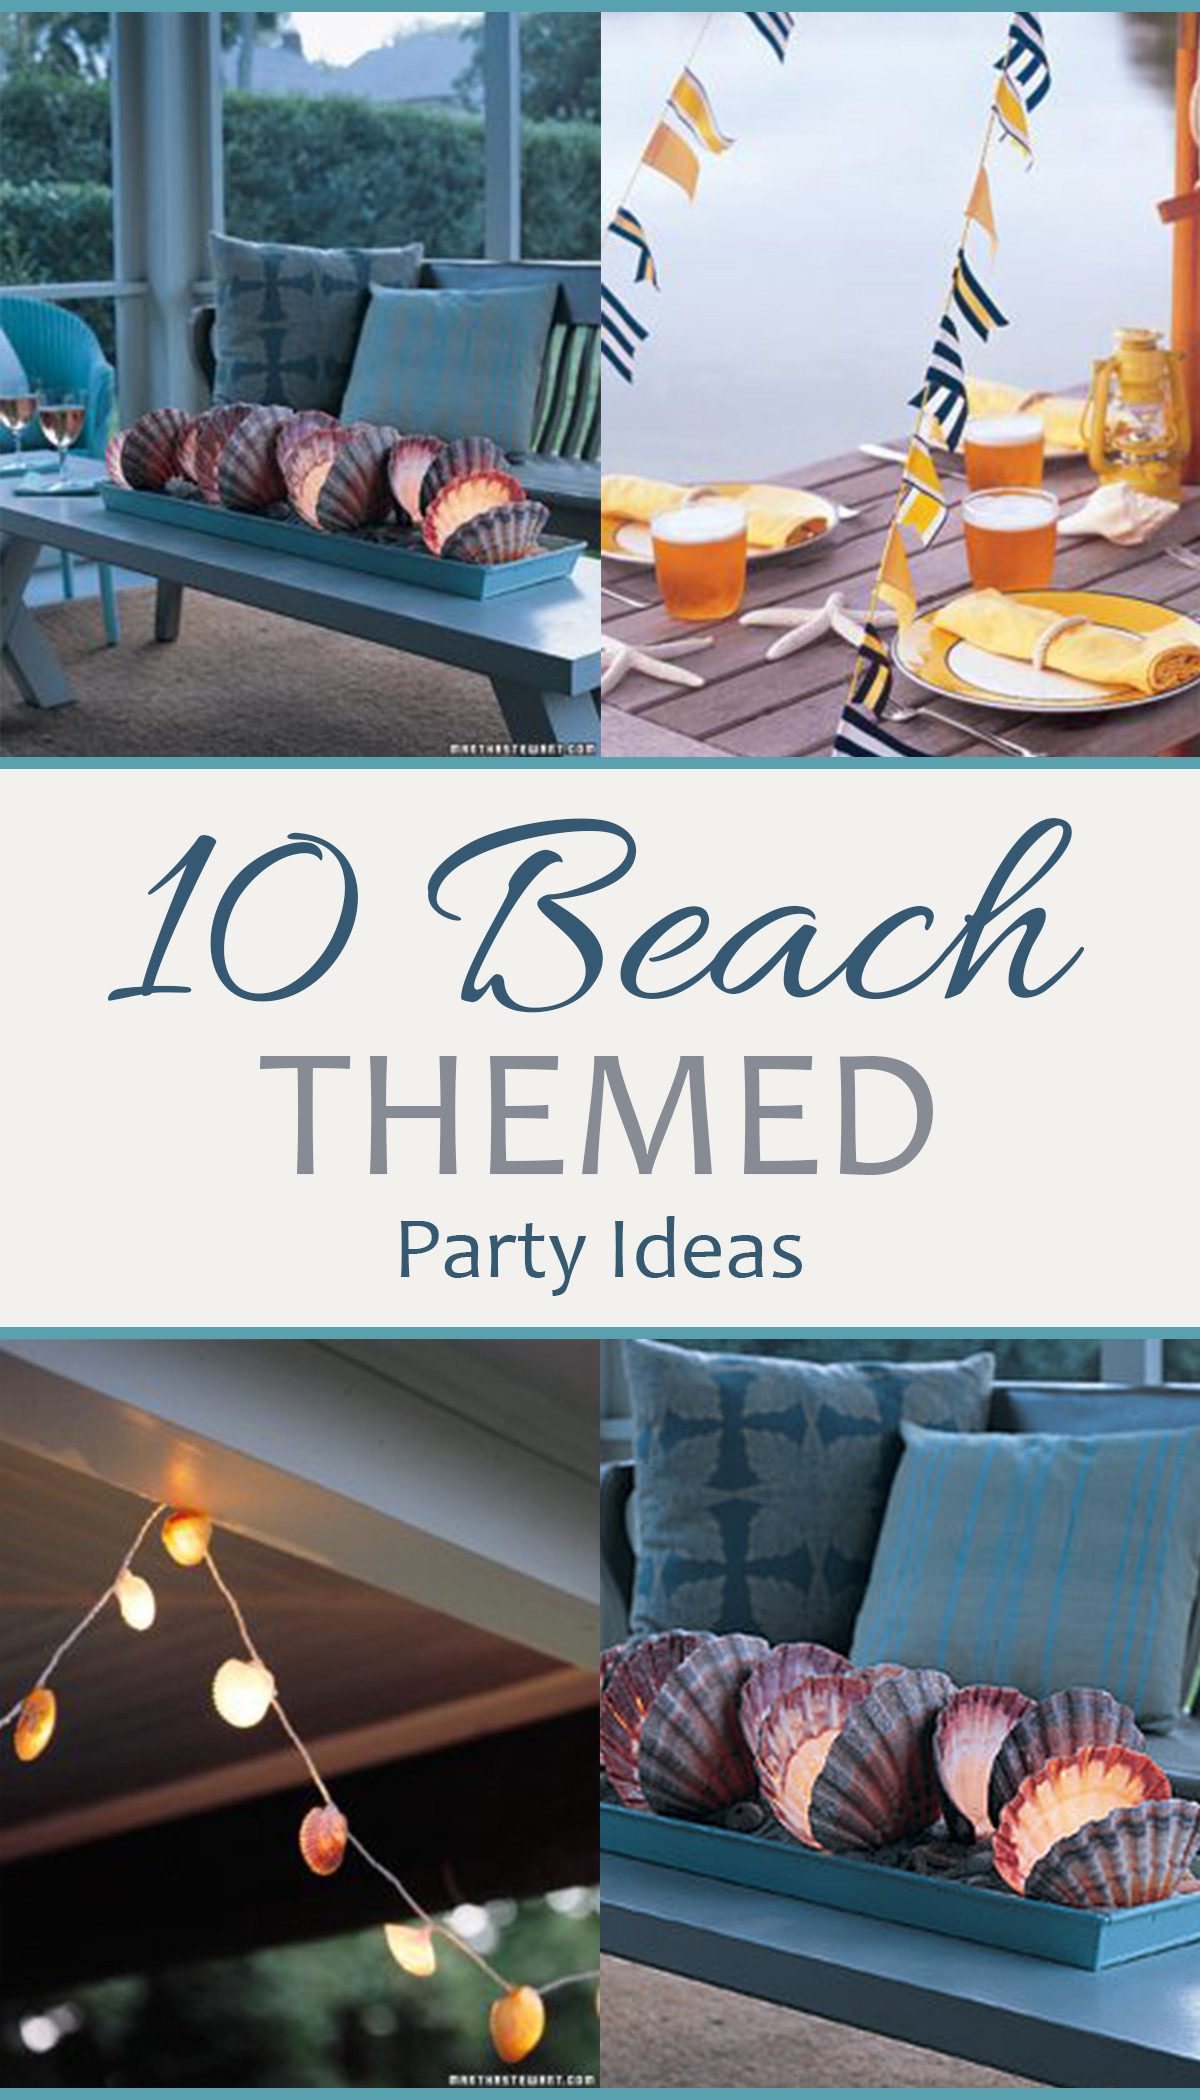 Beach Theme Party Ideas
 10 Beach Themed Party Ideas